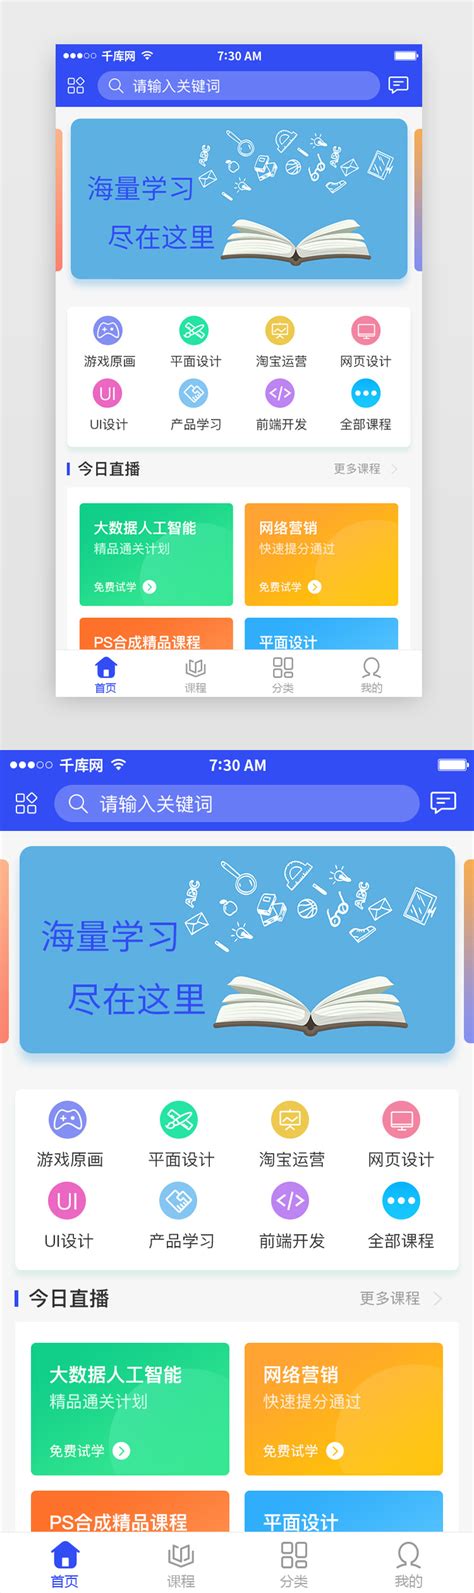 教育app首页UI图标-教育app首页UI按钮-教育app首页设计-千库网